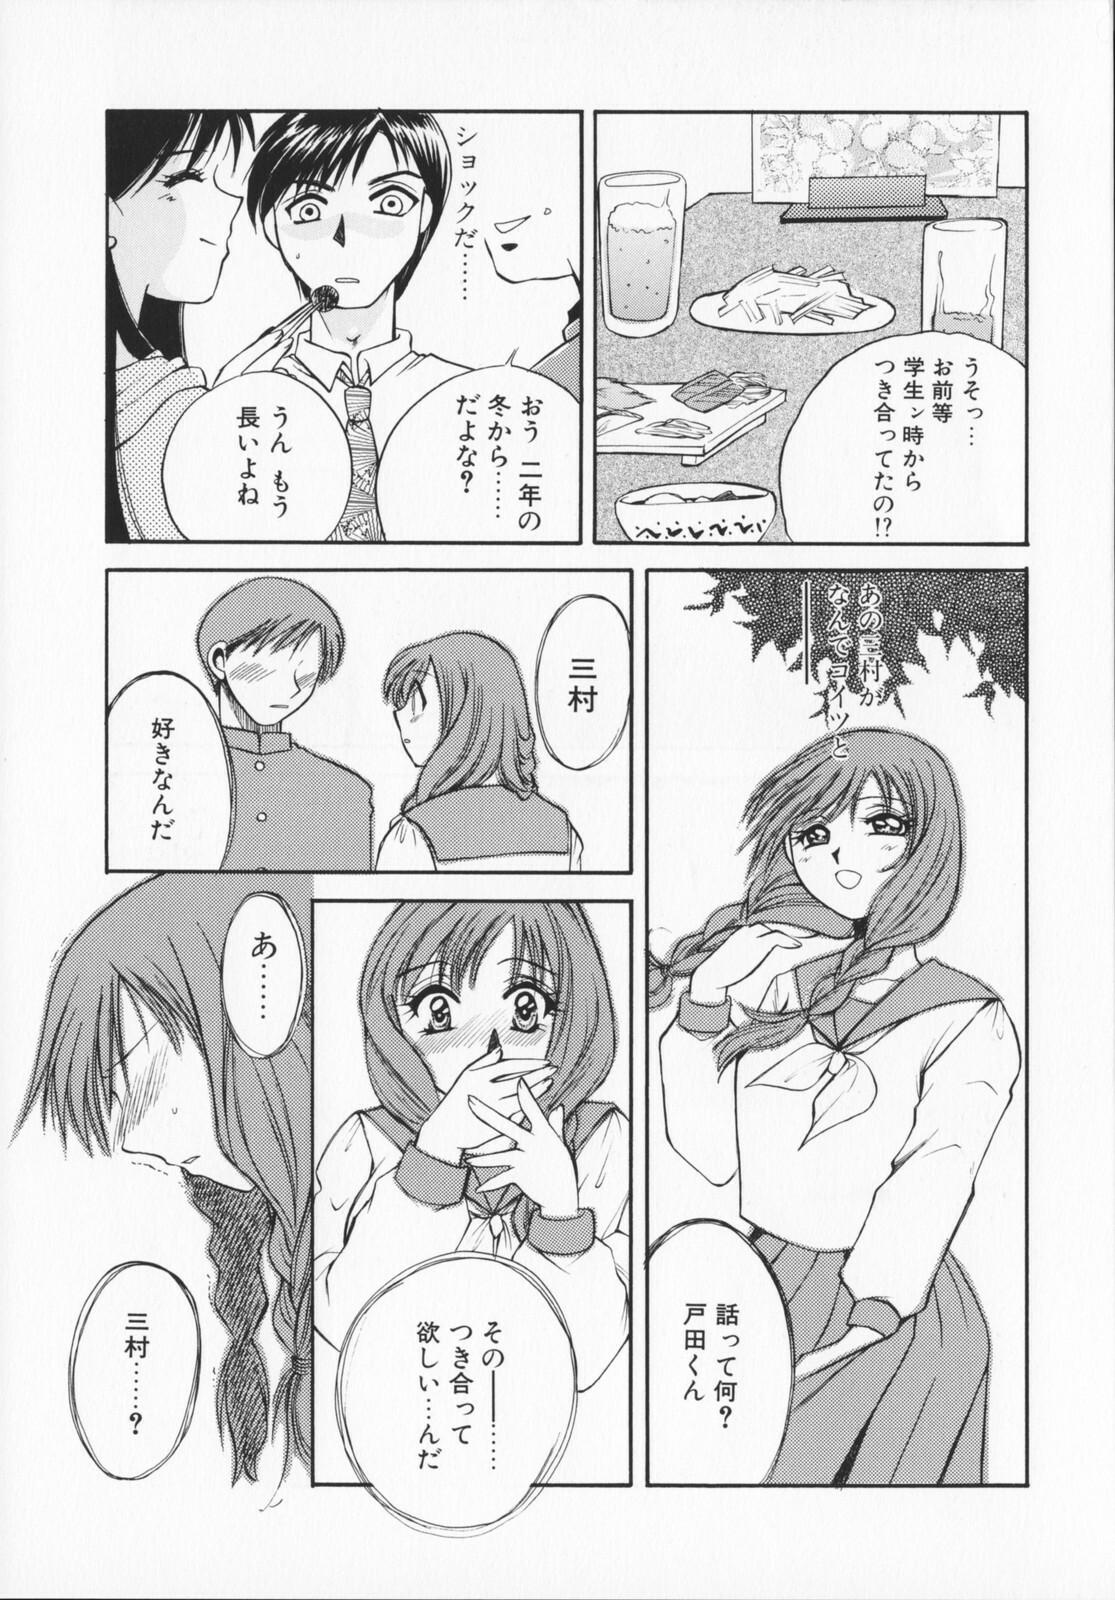 [Ureshino Megumi]Genkaiharetsu (LIMIT EXPLOSION) page 32 full